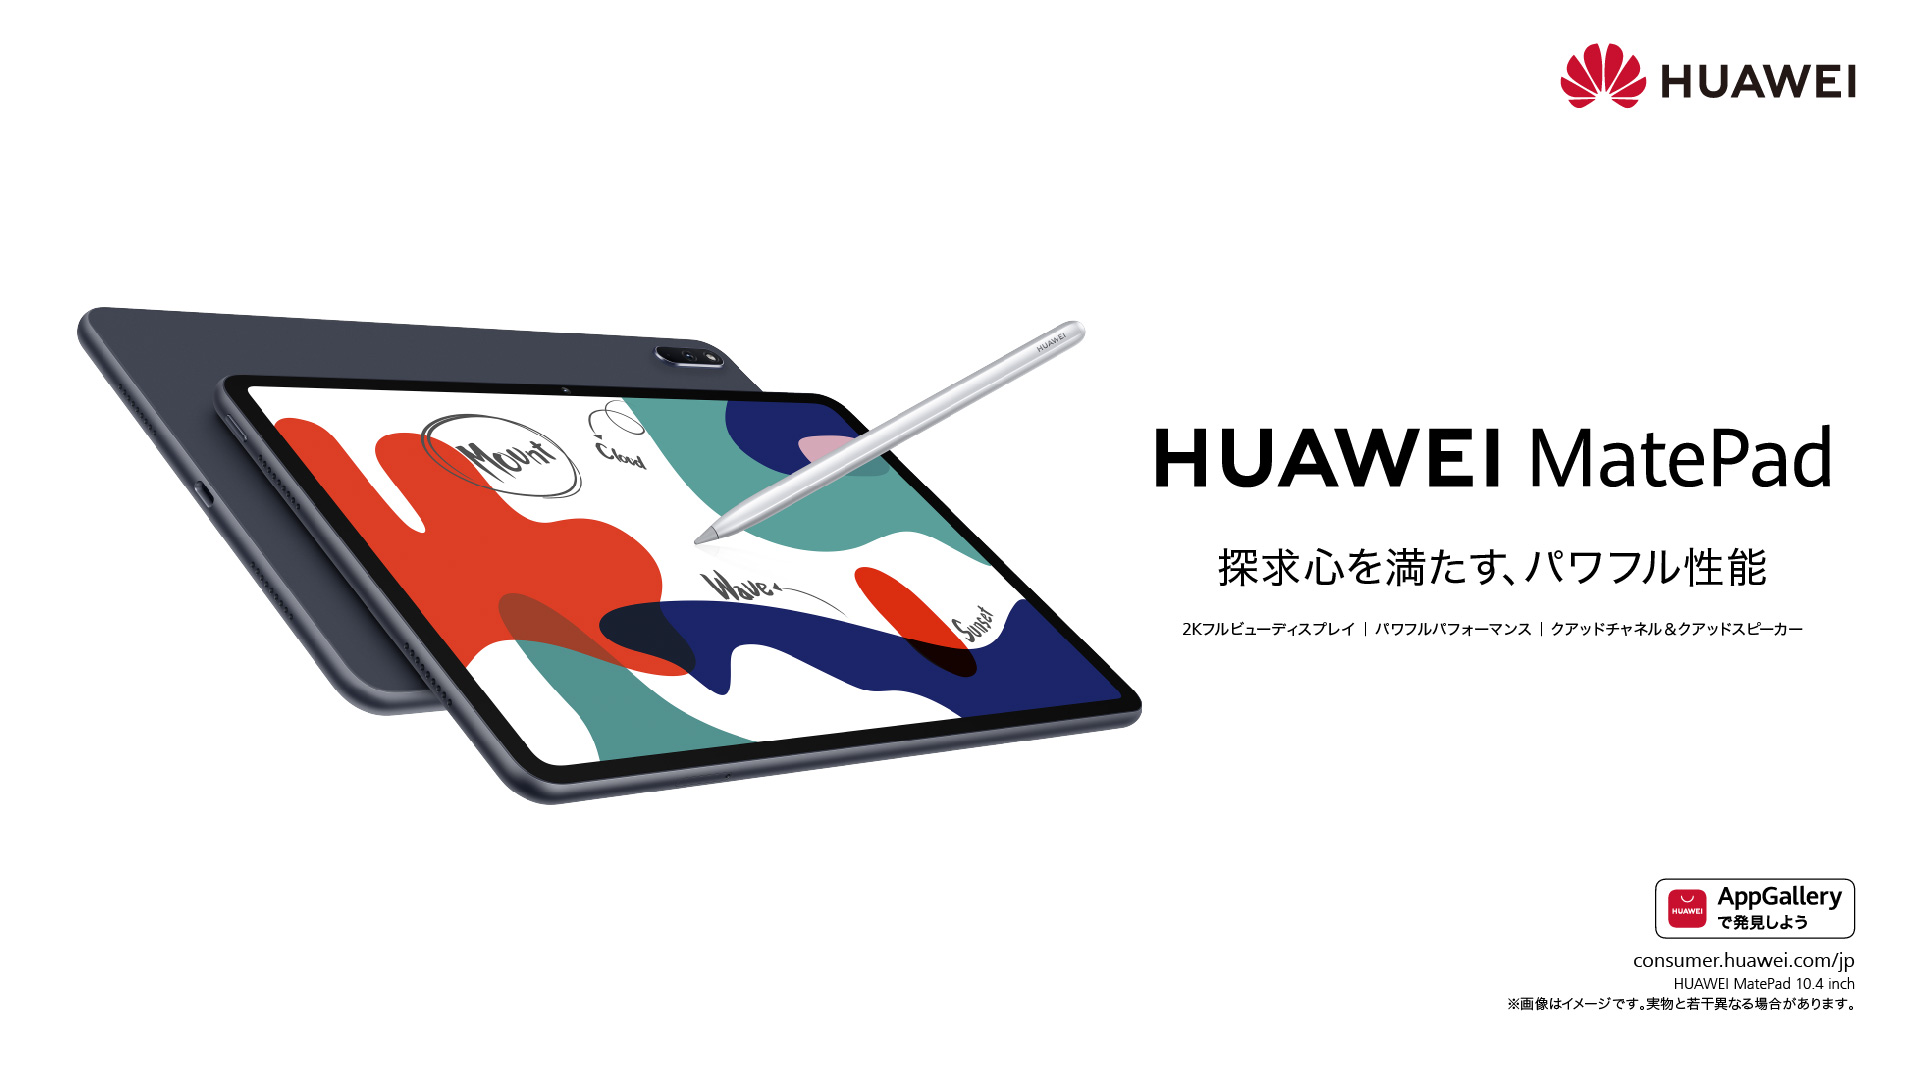 Huawei Mobile Jp On Twitter 新タブレット発表 スリムベゼル仕様の約10 4インチフルビューディスプレイ Huawei Matepad は6月12日 金 発売 持ち運びに便利で片手持ちも楽々 Huawei Matepad T 8 は7月初旬発売 Huawei Matepad Matepadt8 製品